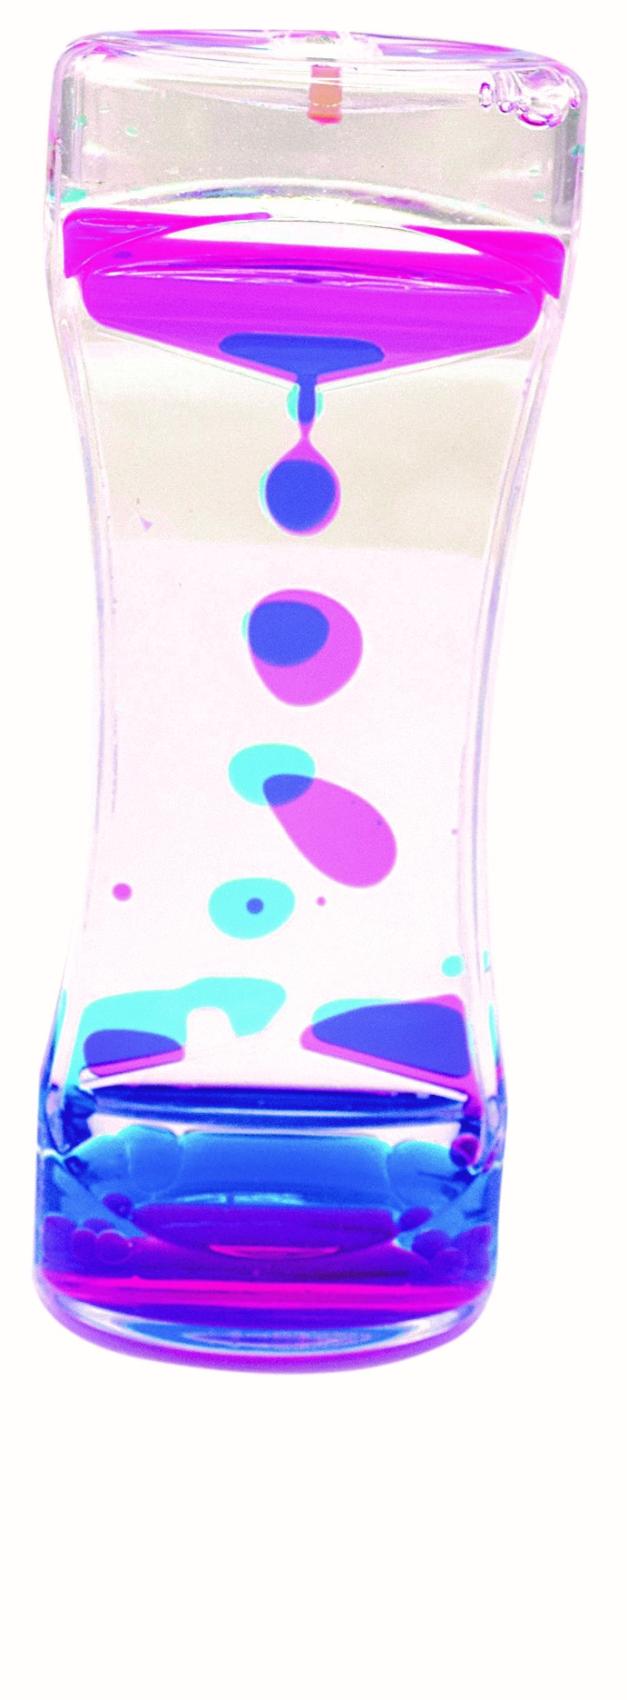 Sensory vlce-Dual s barevnm olejem 1ks modrorov - Kliknutm na obrzek zavete